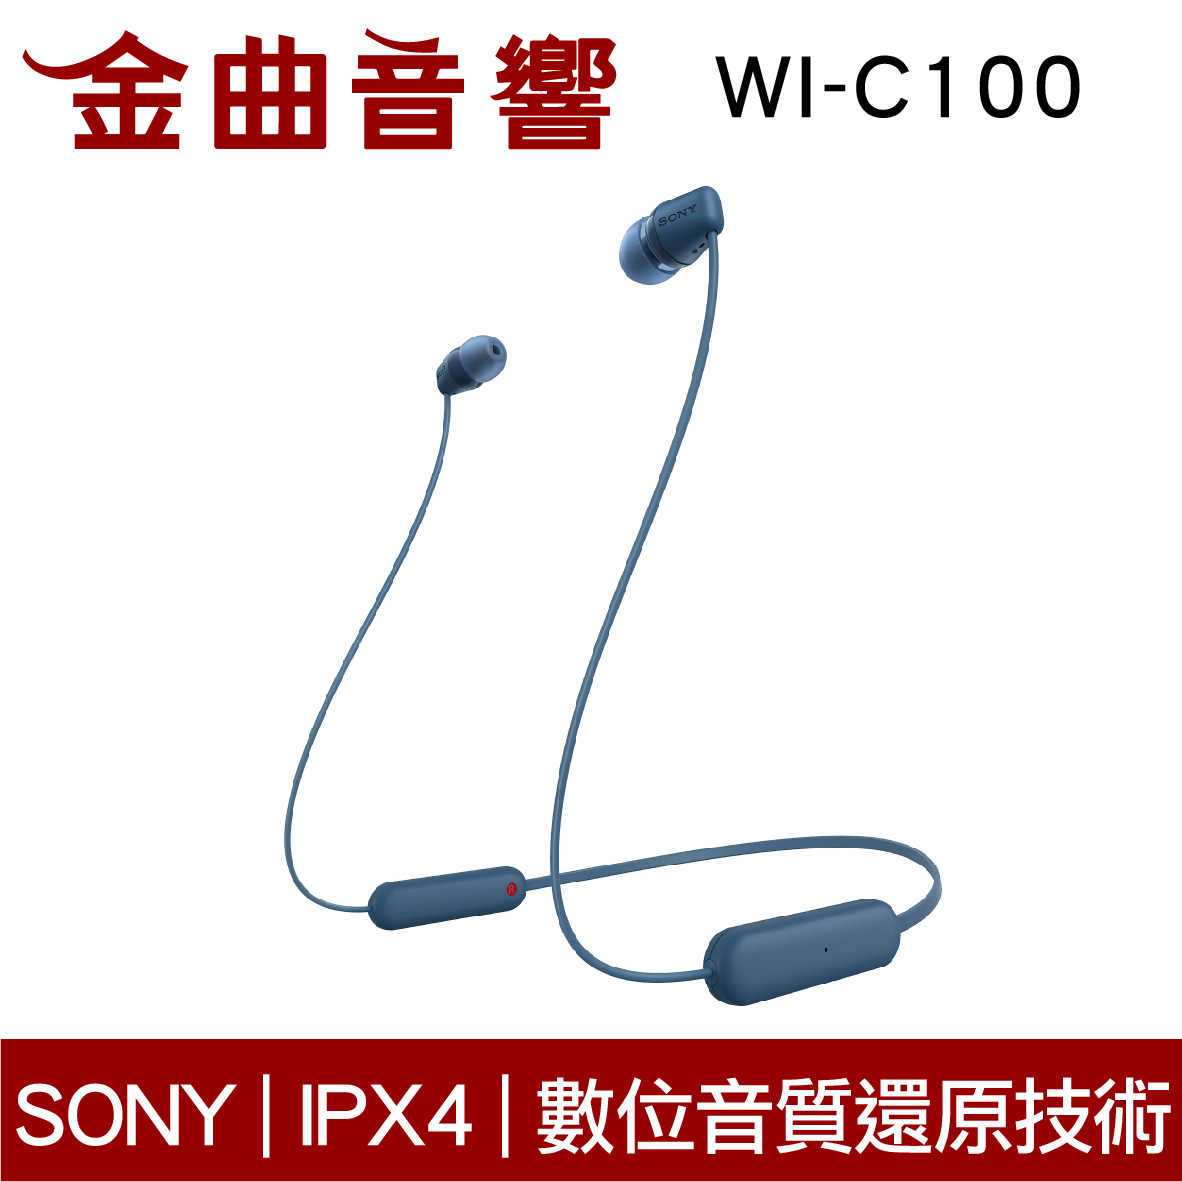 SONY 索尼 WI-C100 藍色 無線 IPX4 續航25hr DSEE 頸掛式 藍牙 耳機 | 金曲音響